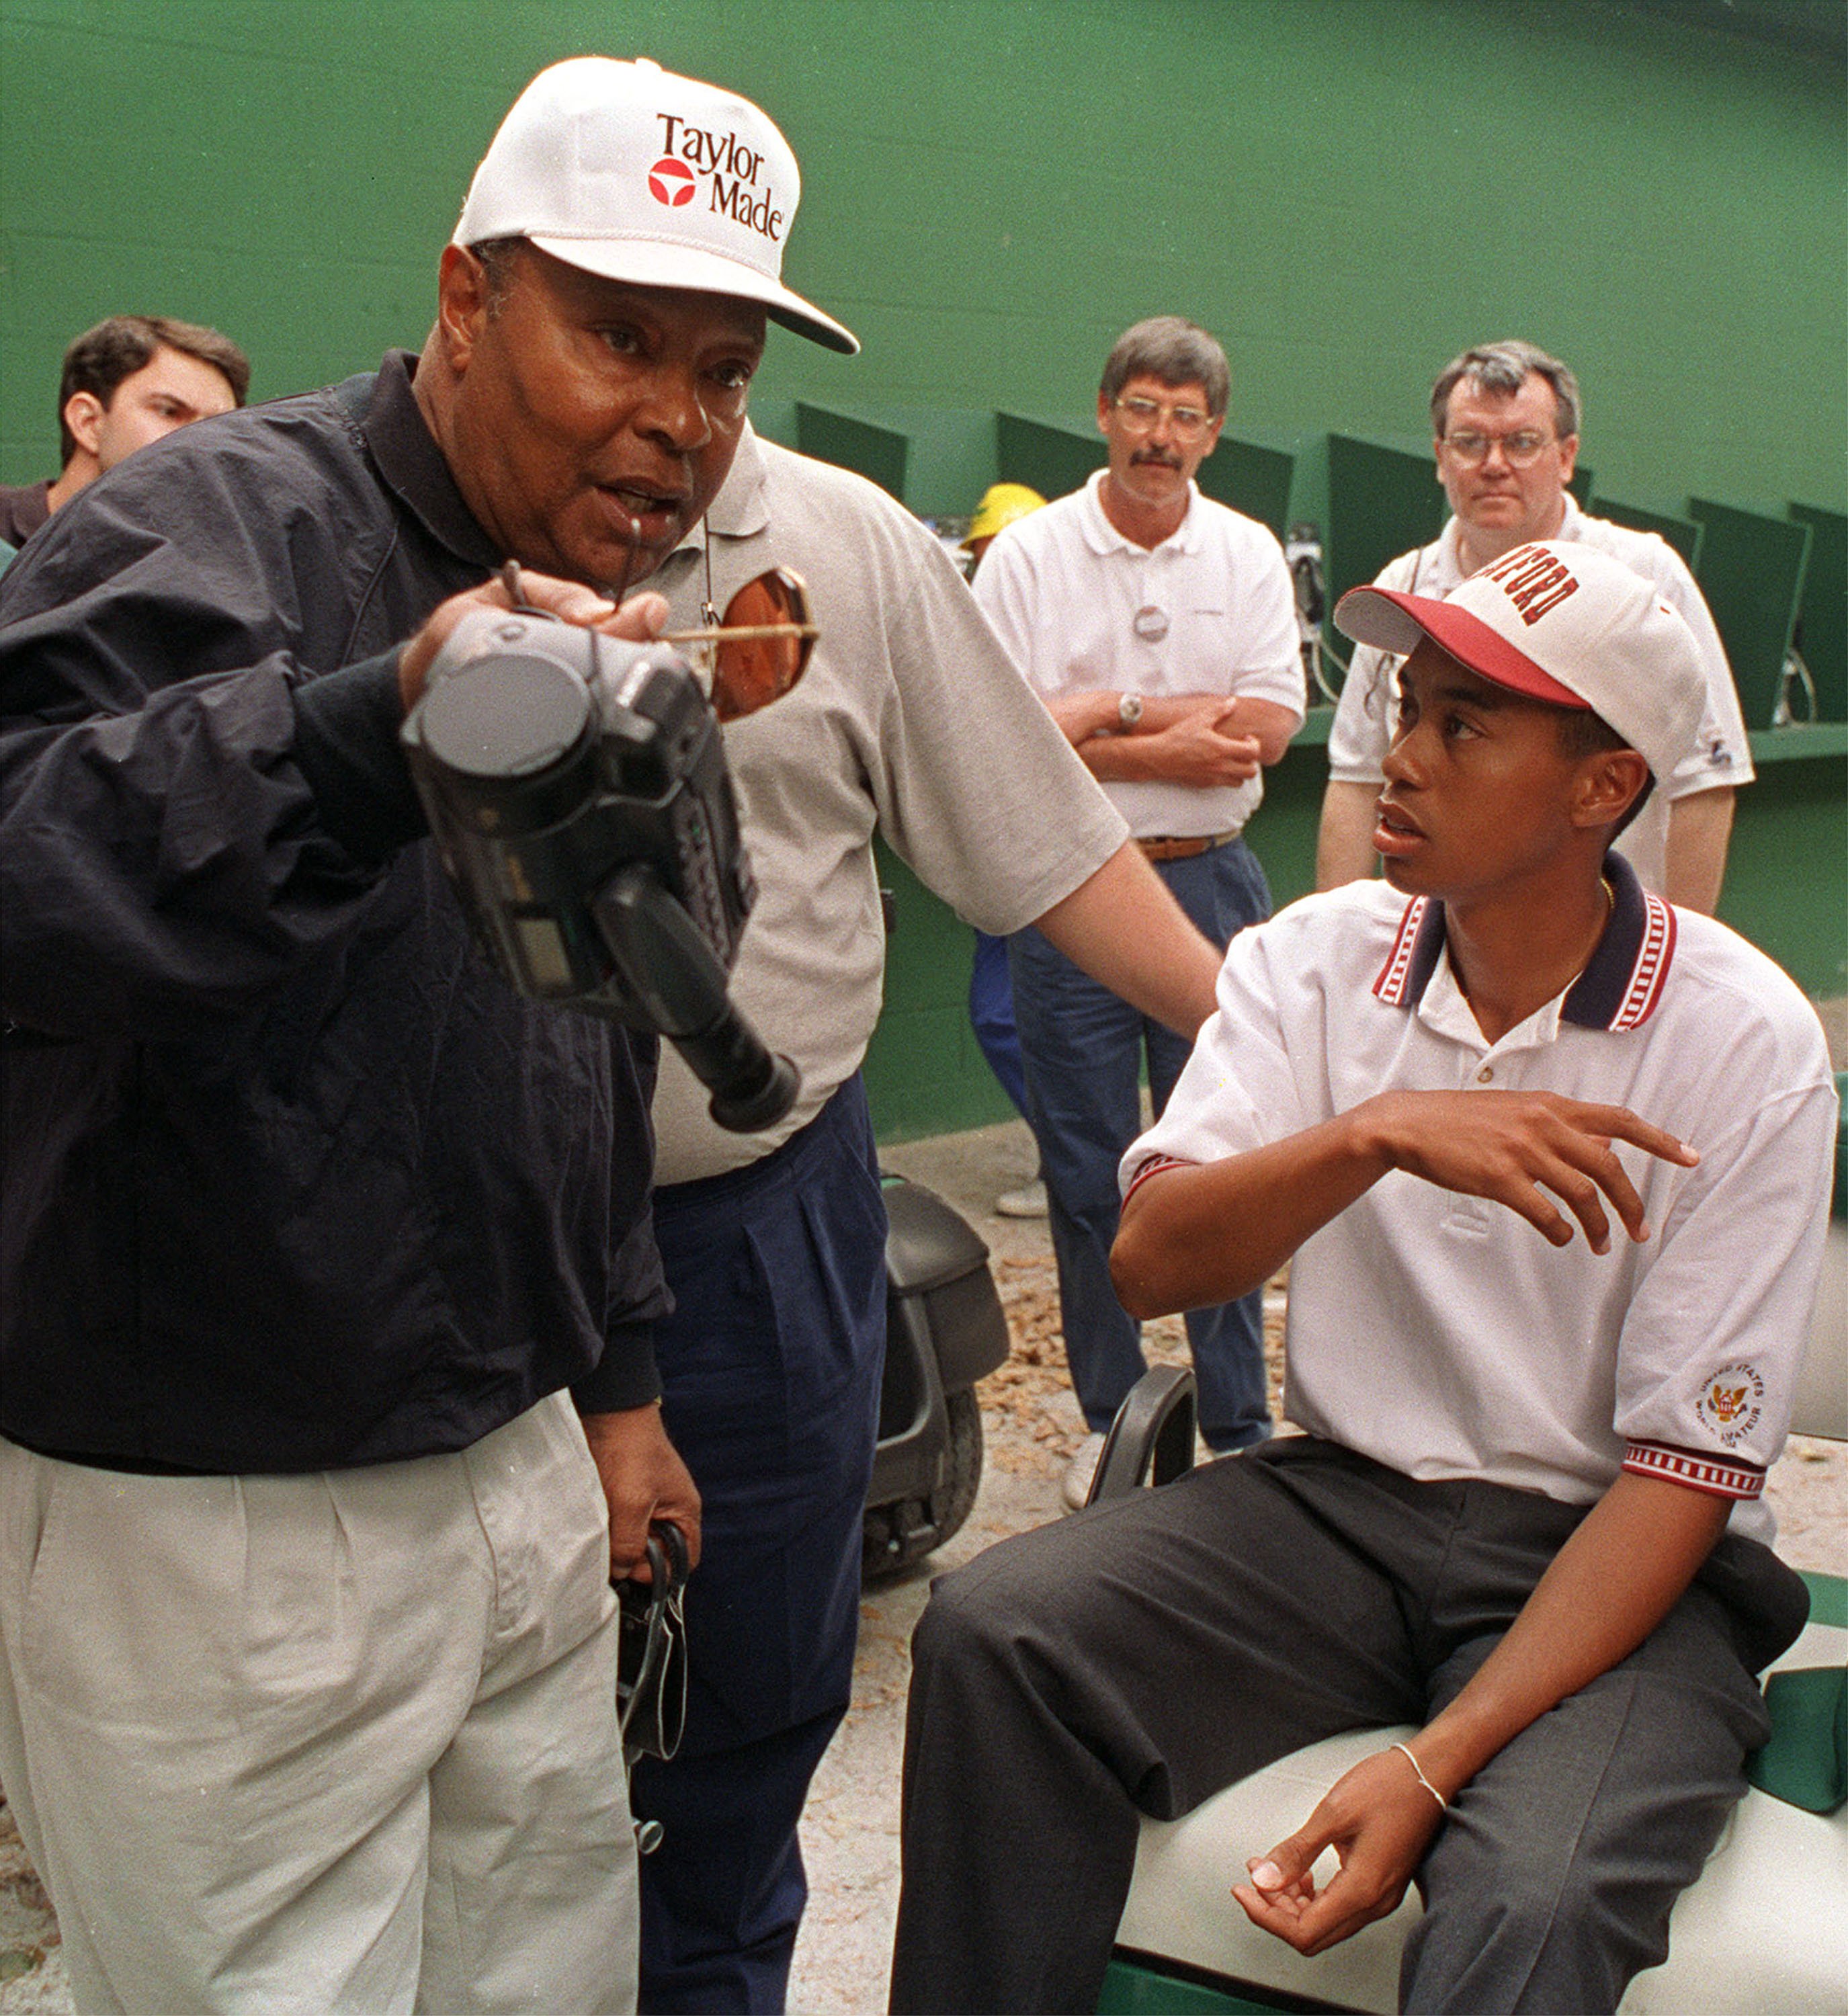 Tiger Woods, reklamfilm, Golf, Nike, Familj, Reklam, Otrohet, Elin Nordegren